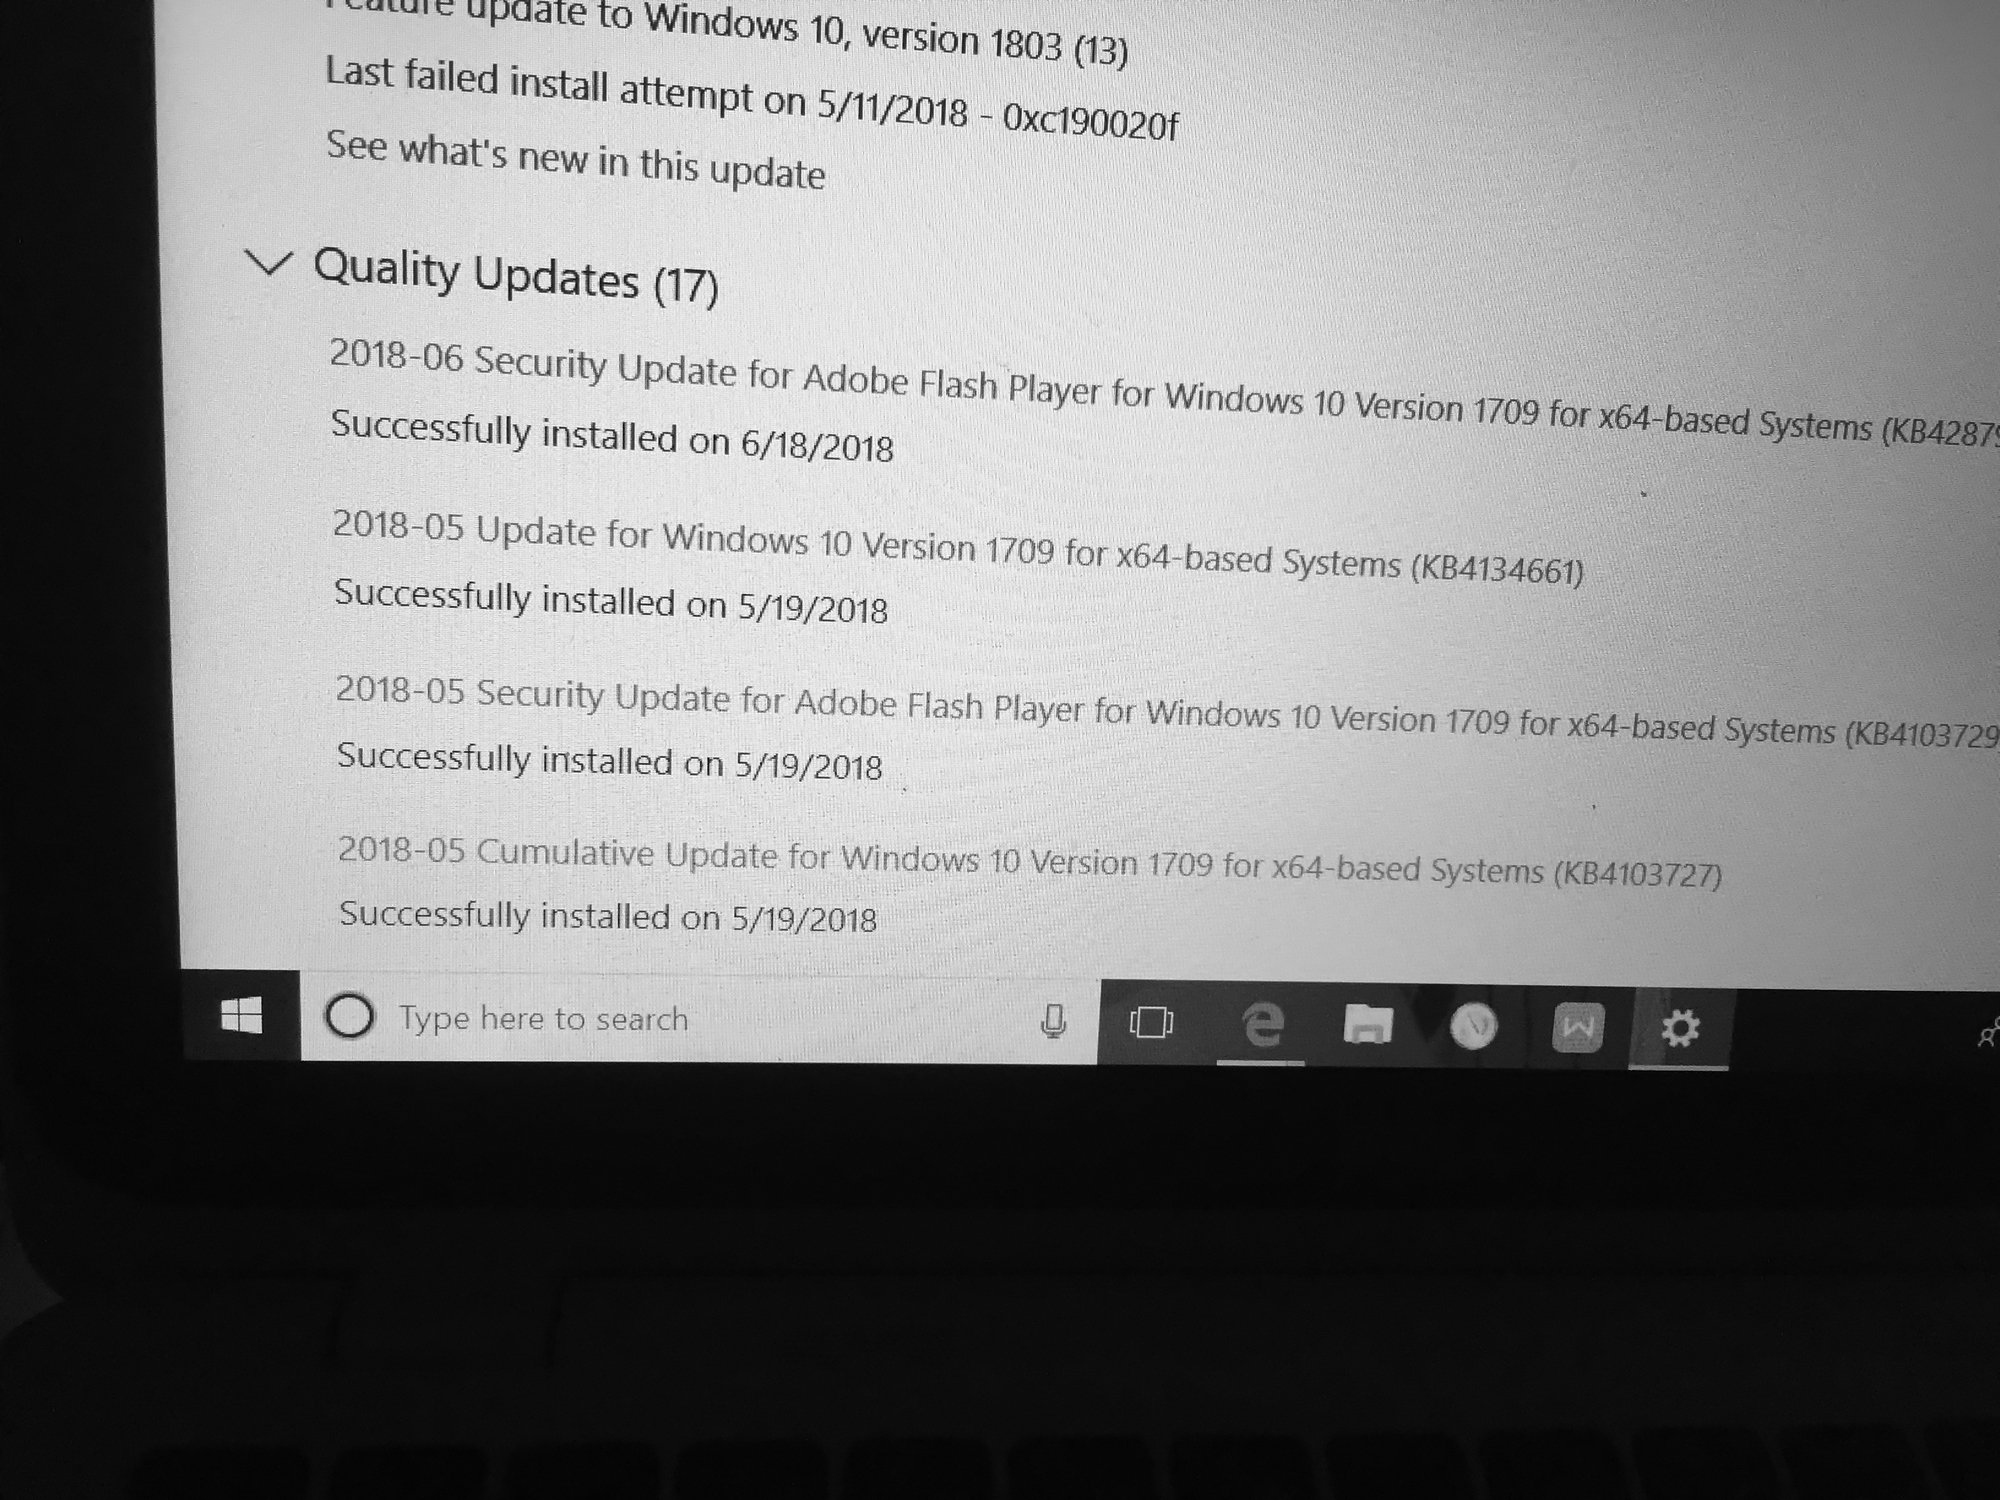 Can't finish update - Windows 10 262f8c43-3679-4401-a381-3dc20e763c0e?upload=true.jpg